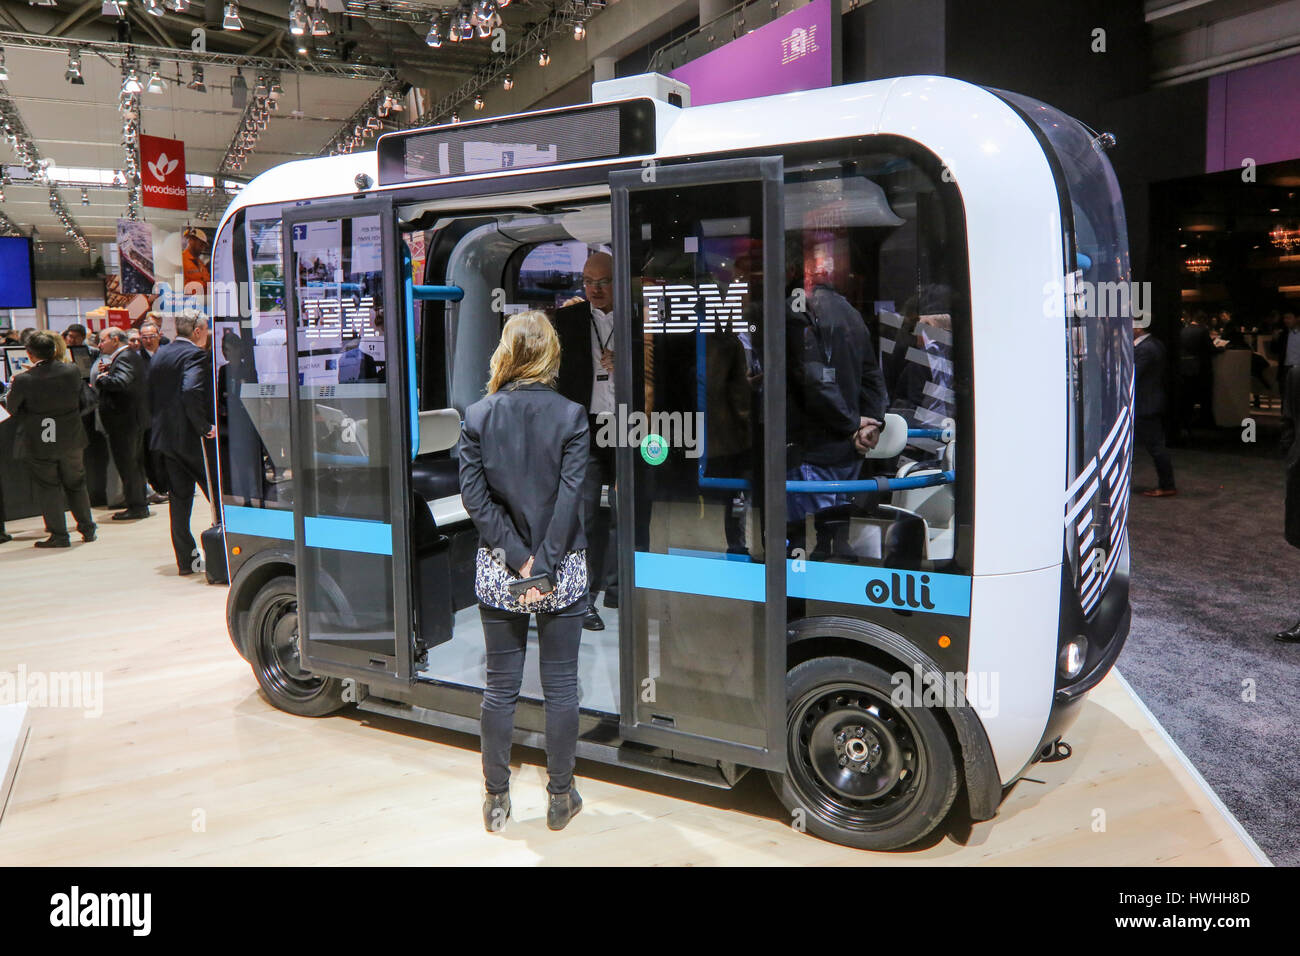 Hannover, Alemania, 20 de marzo de 2017 - CeBIT la feria de tecnología digital. Los visitantes de la feria del comercio vaya en la autónoma autopropulsadas de autobús "olli" en el stand de IBM Foto de stock